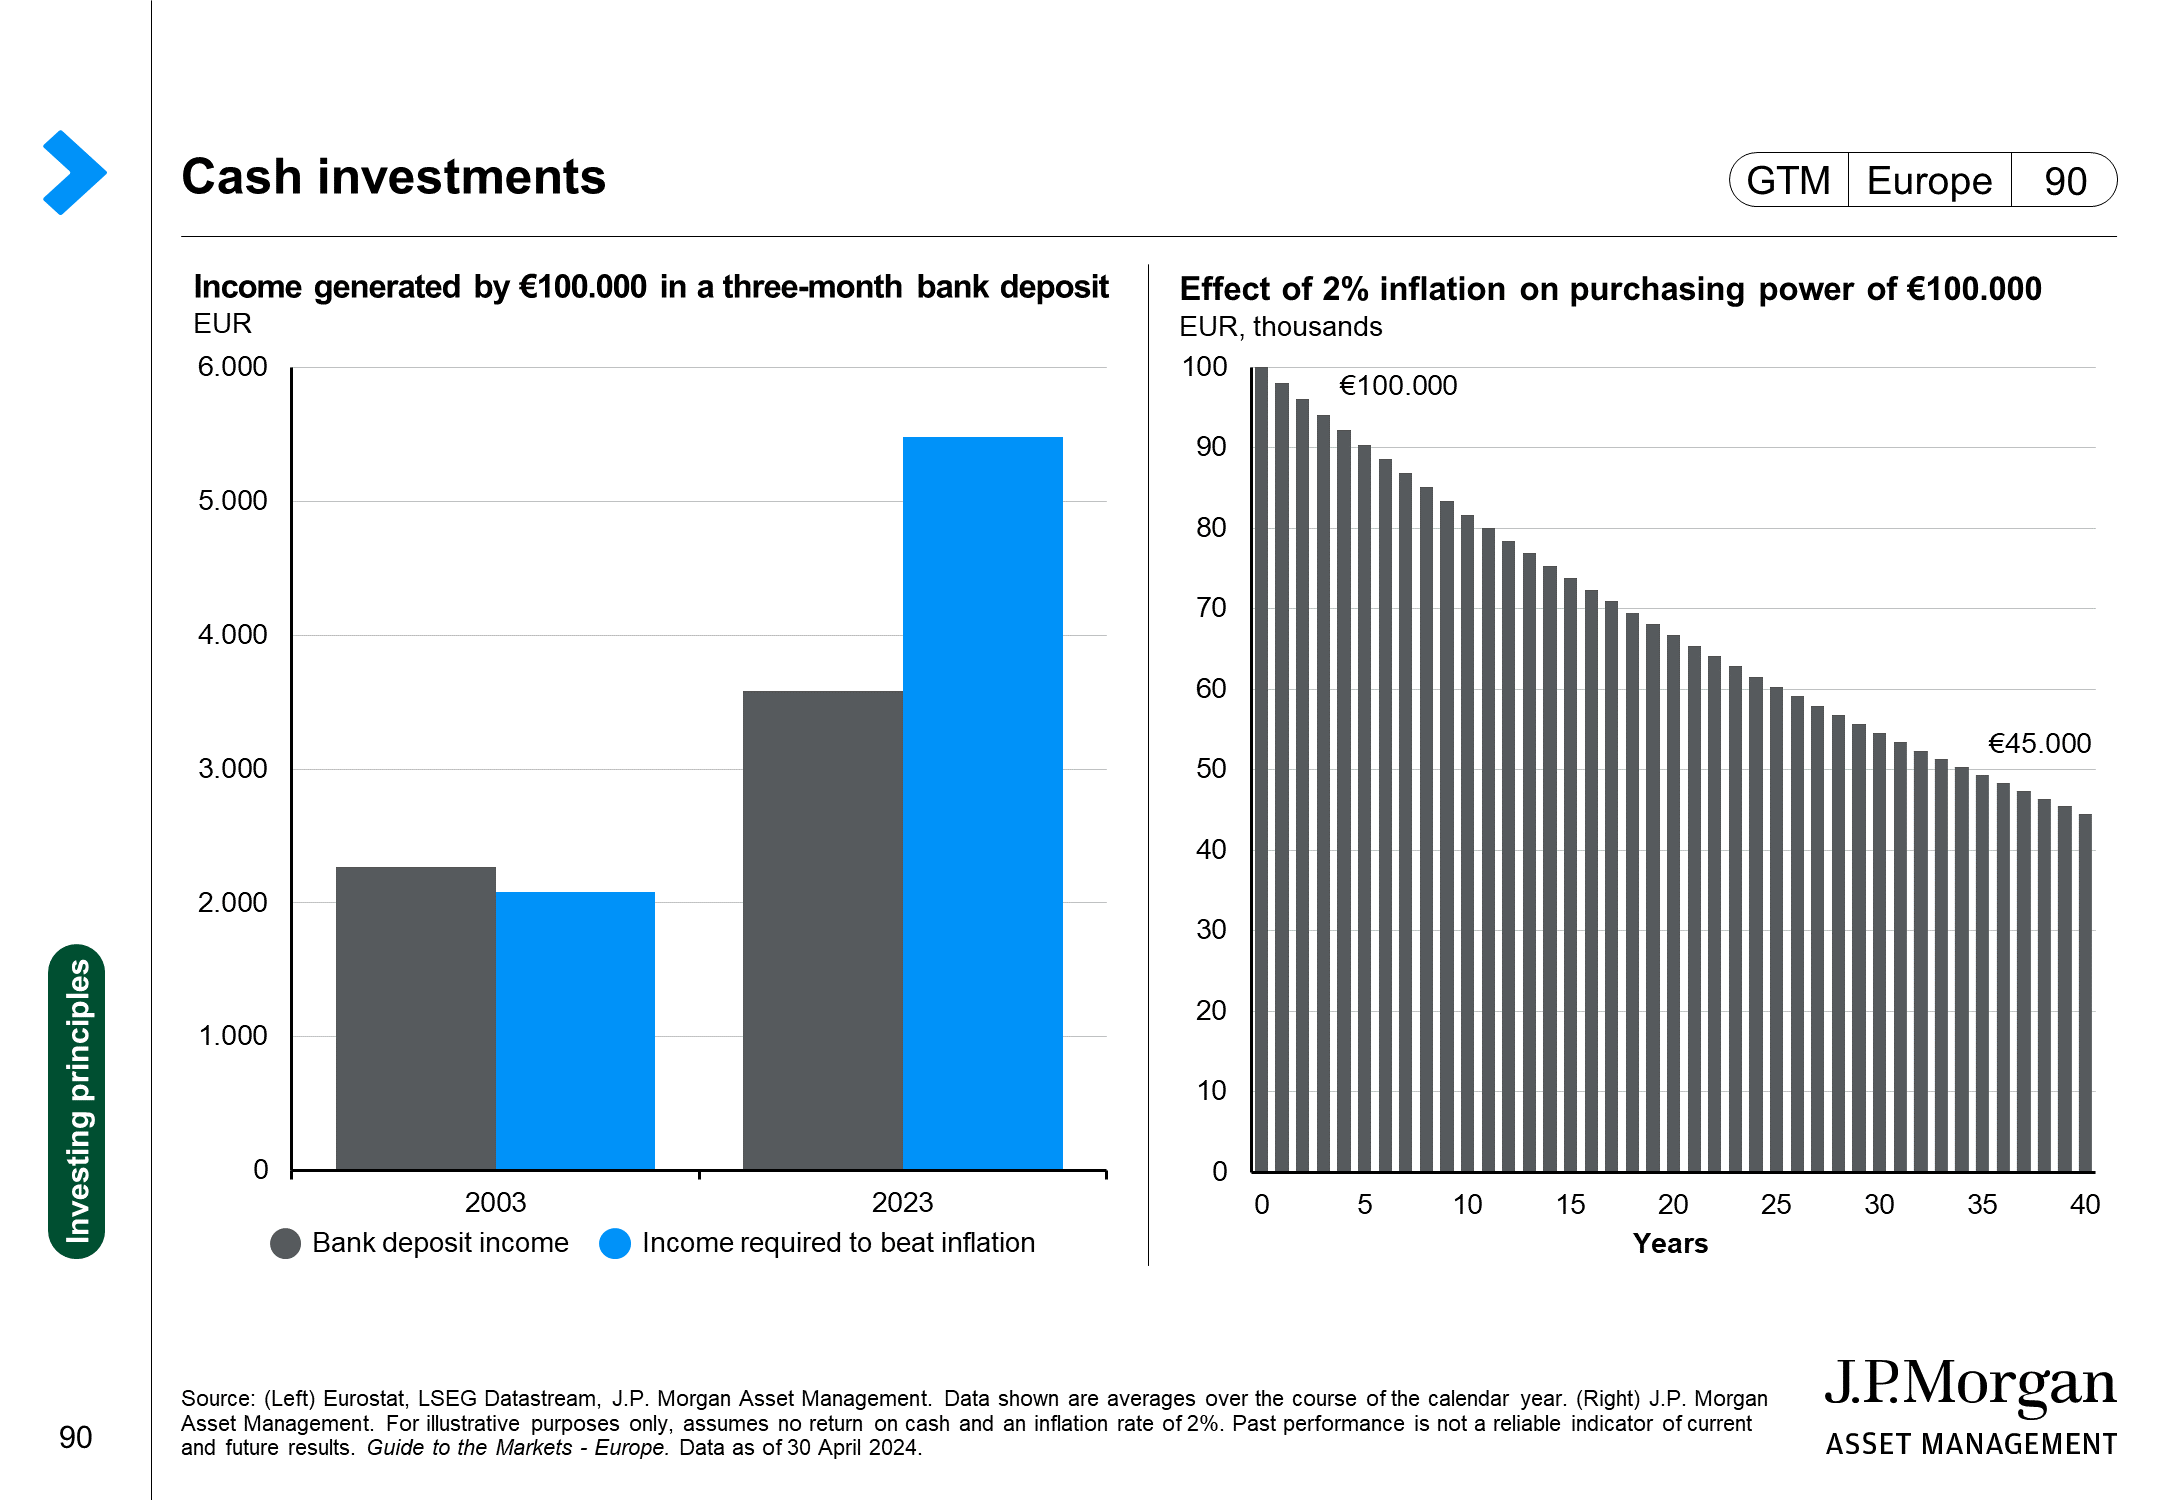 Long-term asset returns